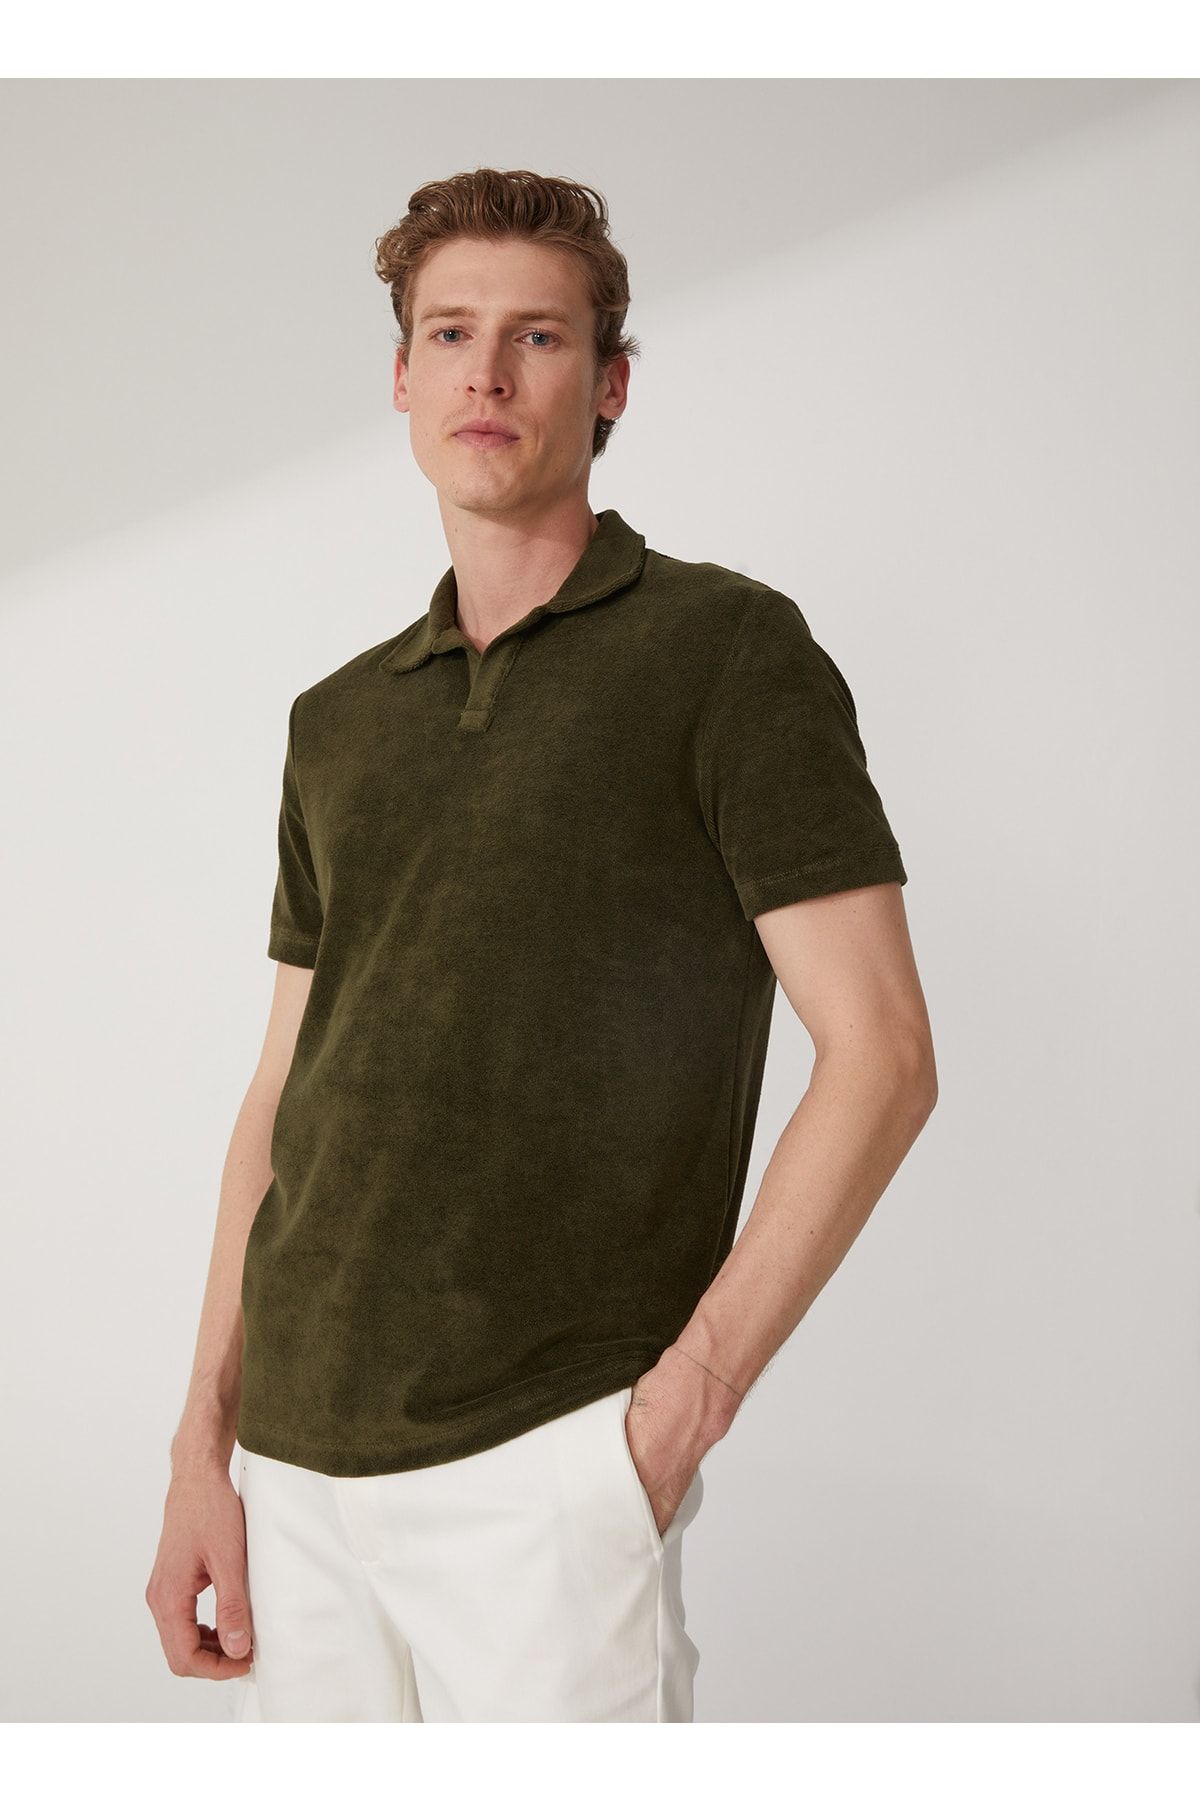 Fabrika Polo T-shirt, L, Yeşil